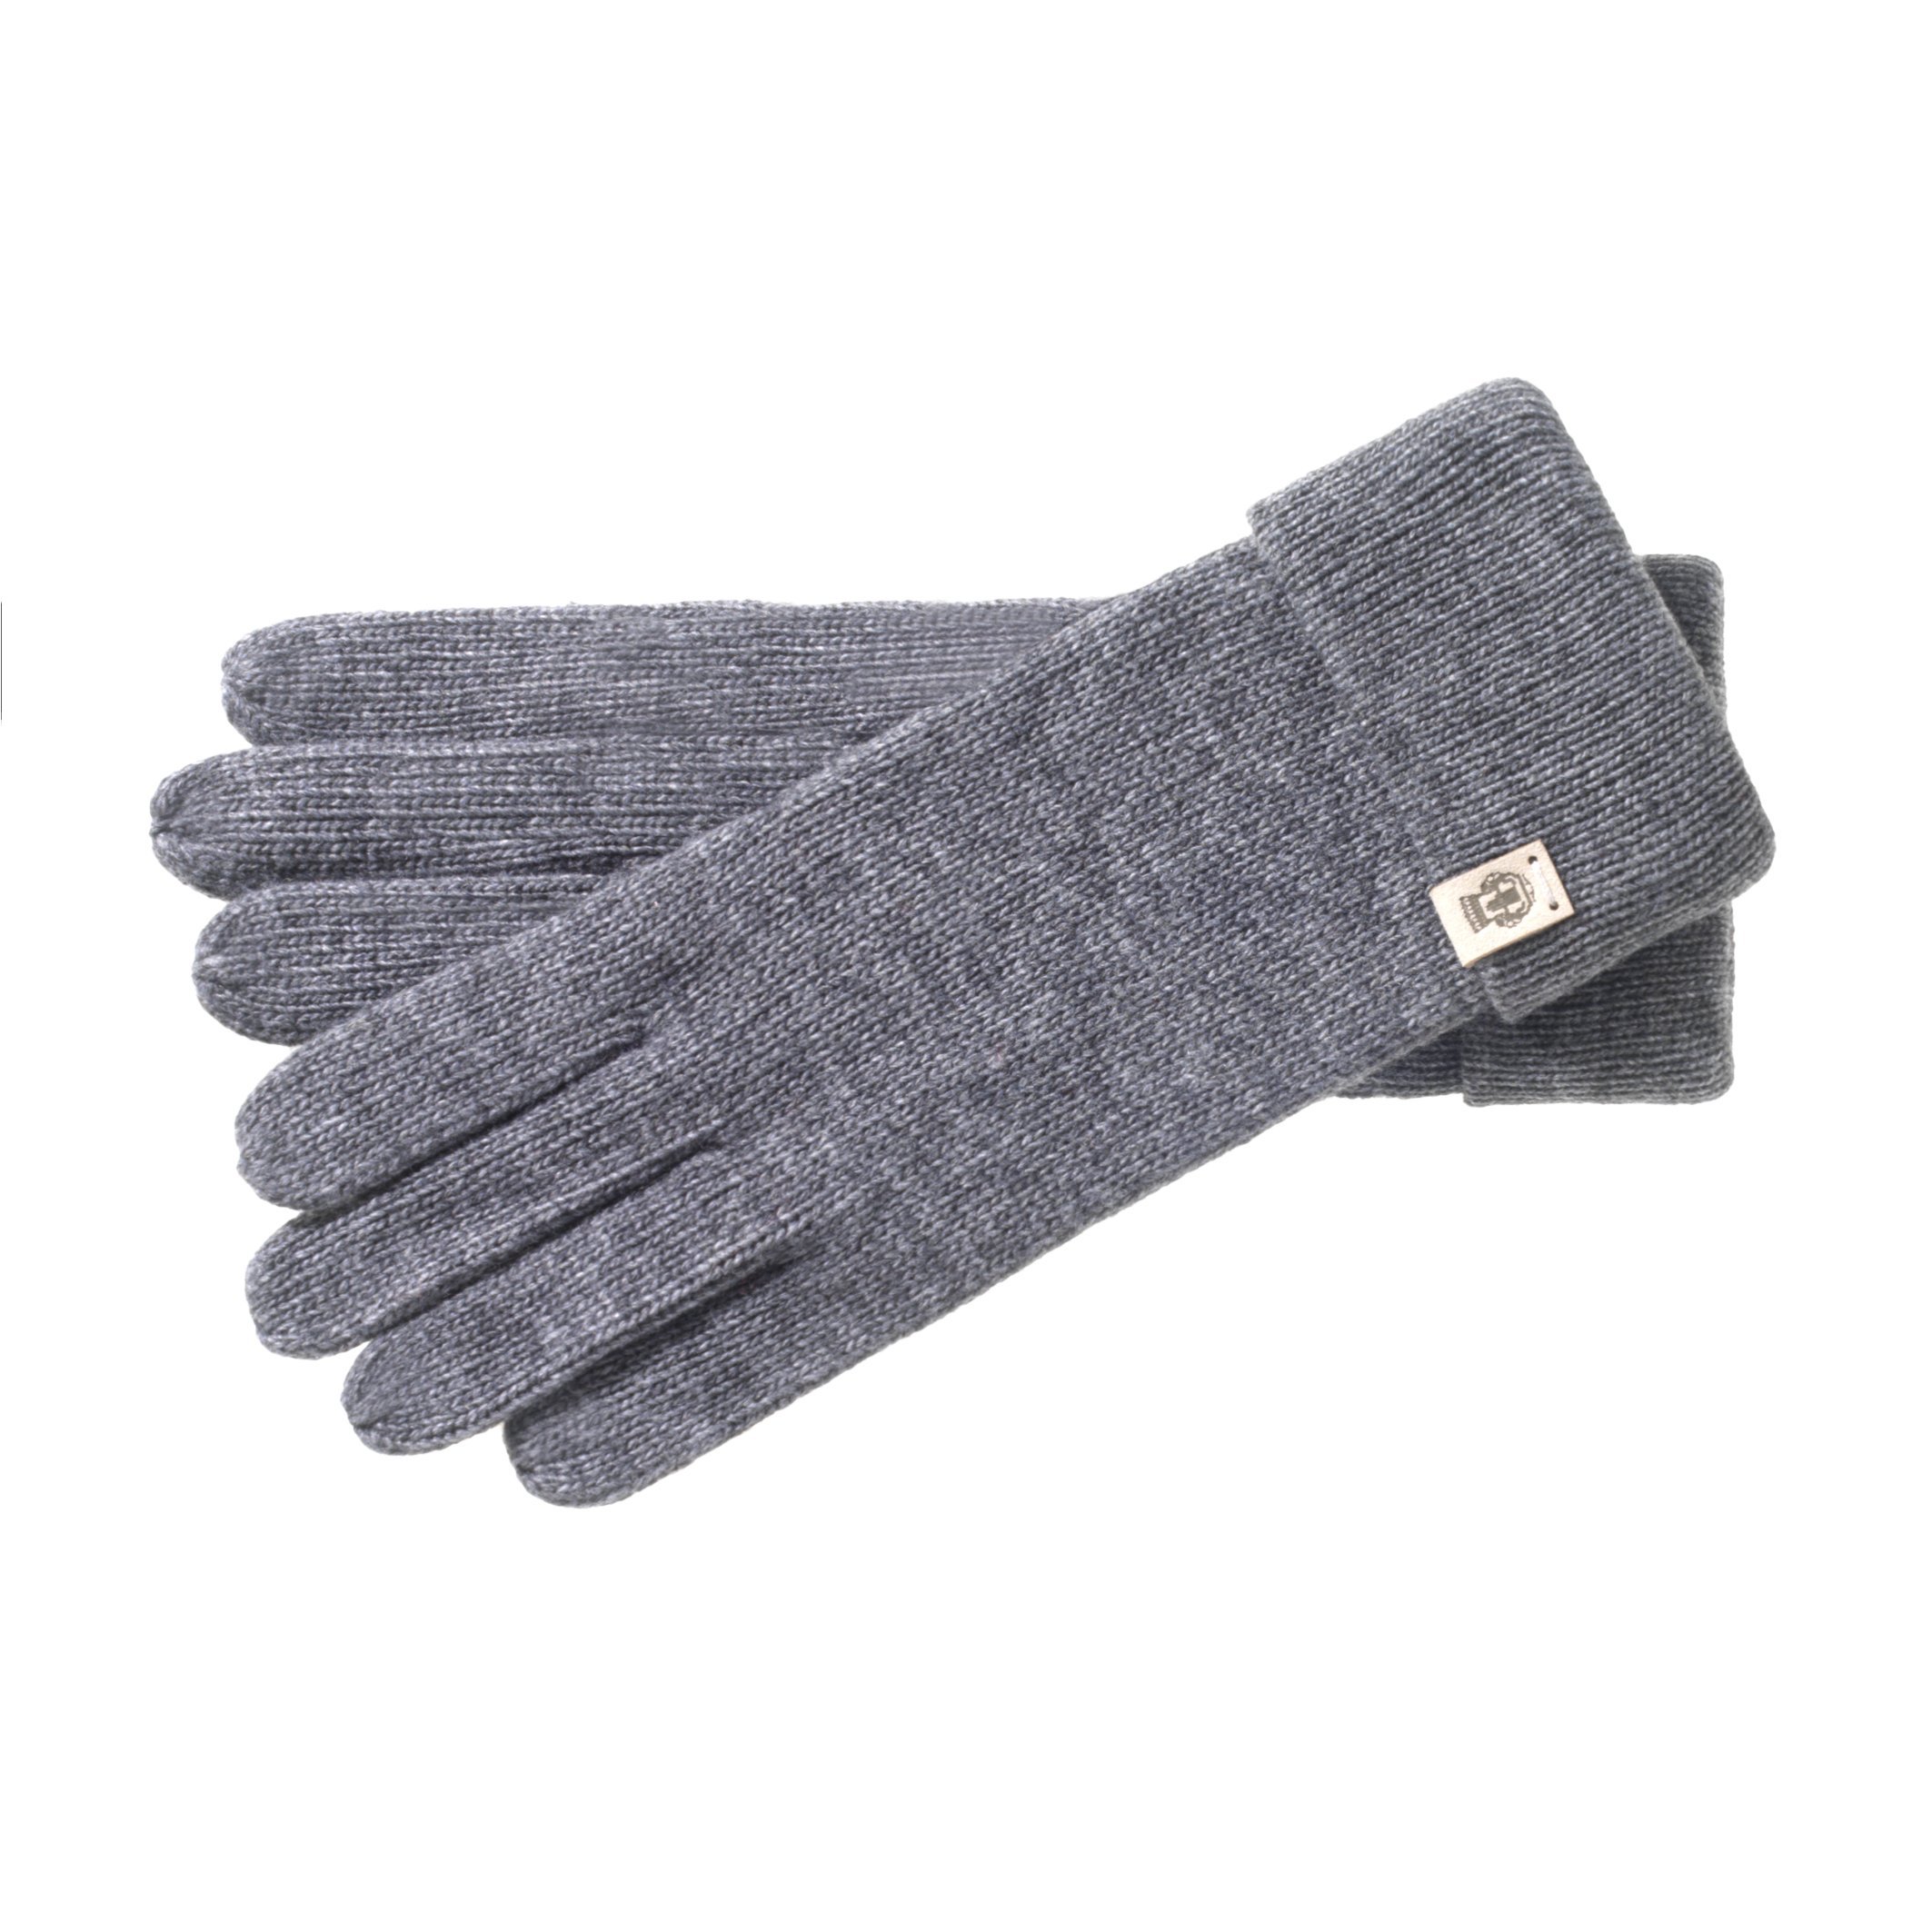 Roeckl Damen Essential Handschuhe, Grau (Anthracite 090), 6 (Herstellergröße: 6)